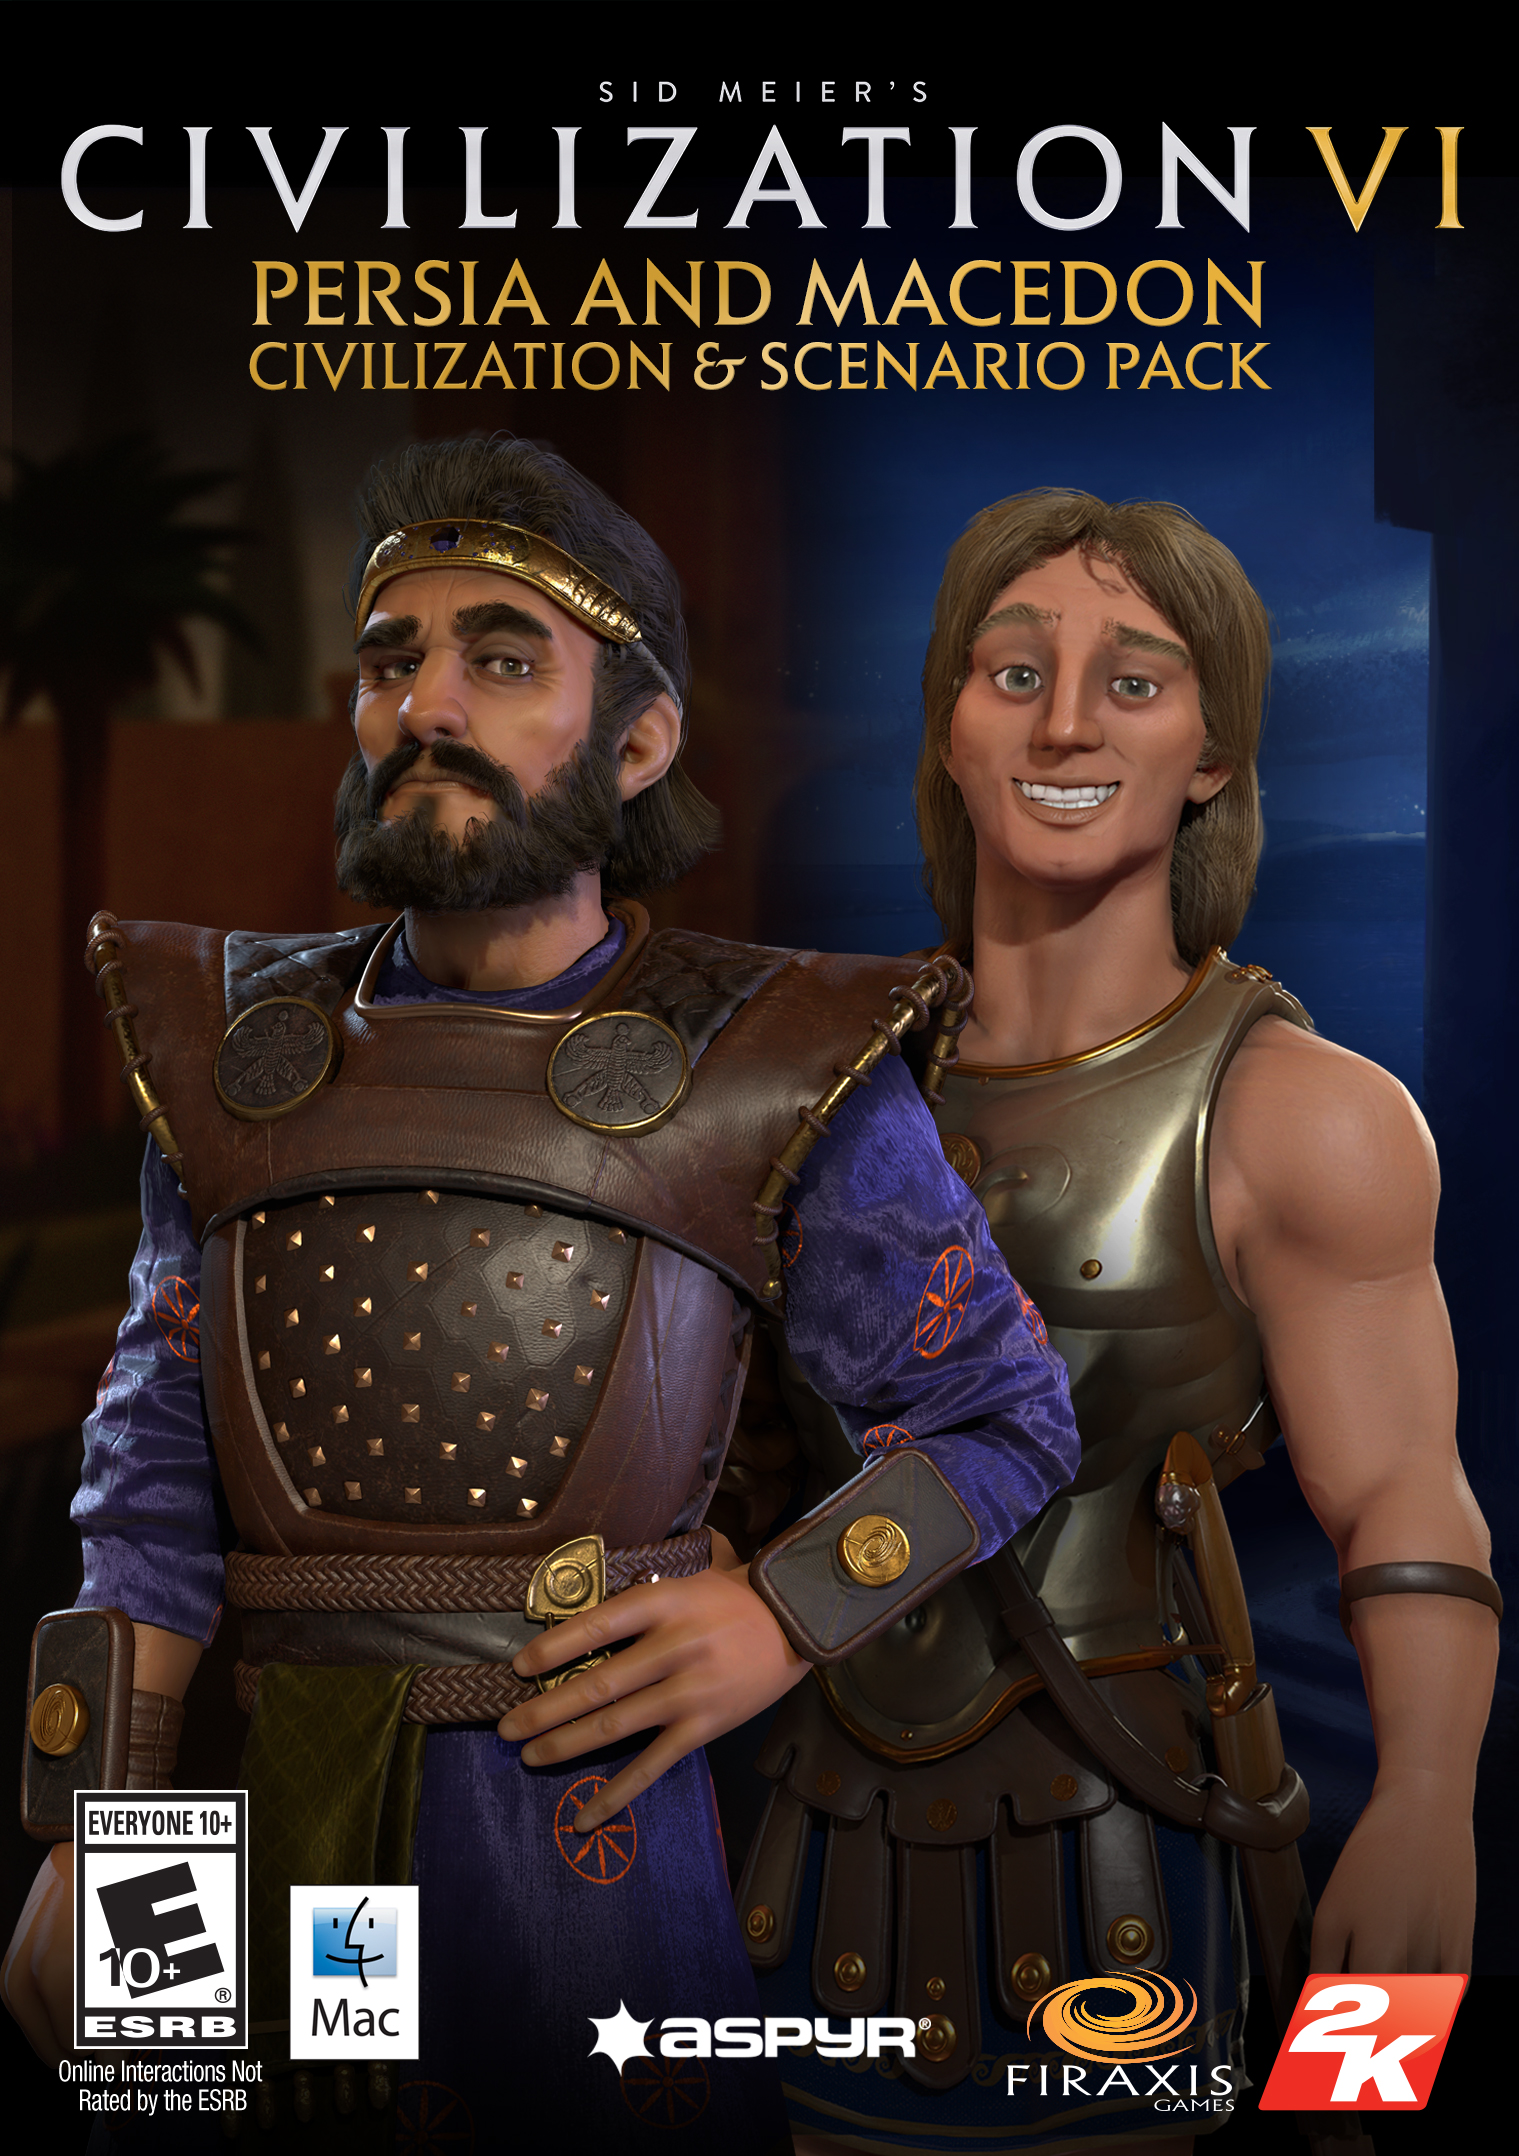 Sid Meier's Civilization VI - Цивилизация на Персия и Македония, както и набор от скриптове (Mac) [Кода на онлайн-игра]